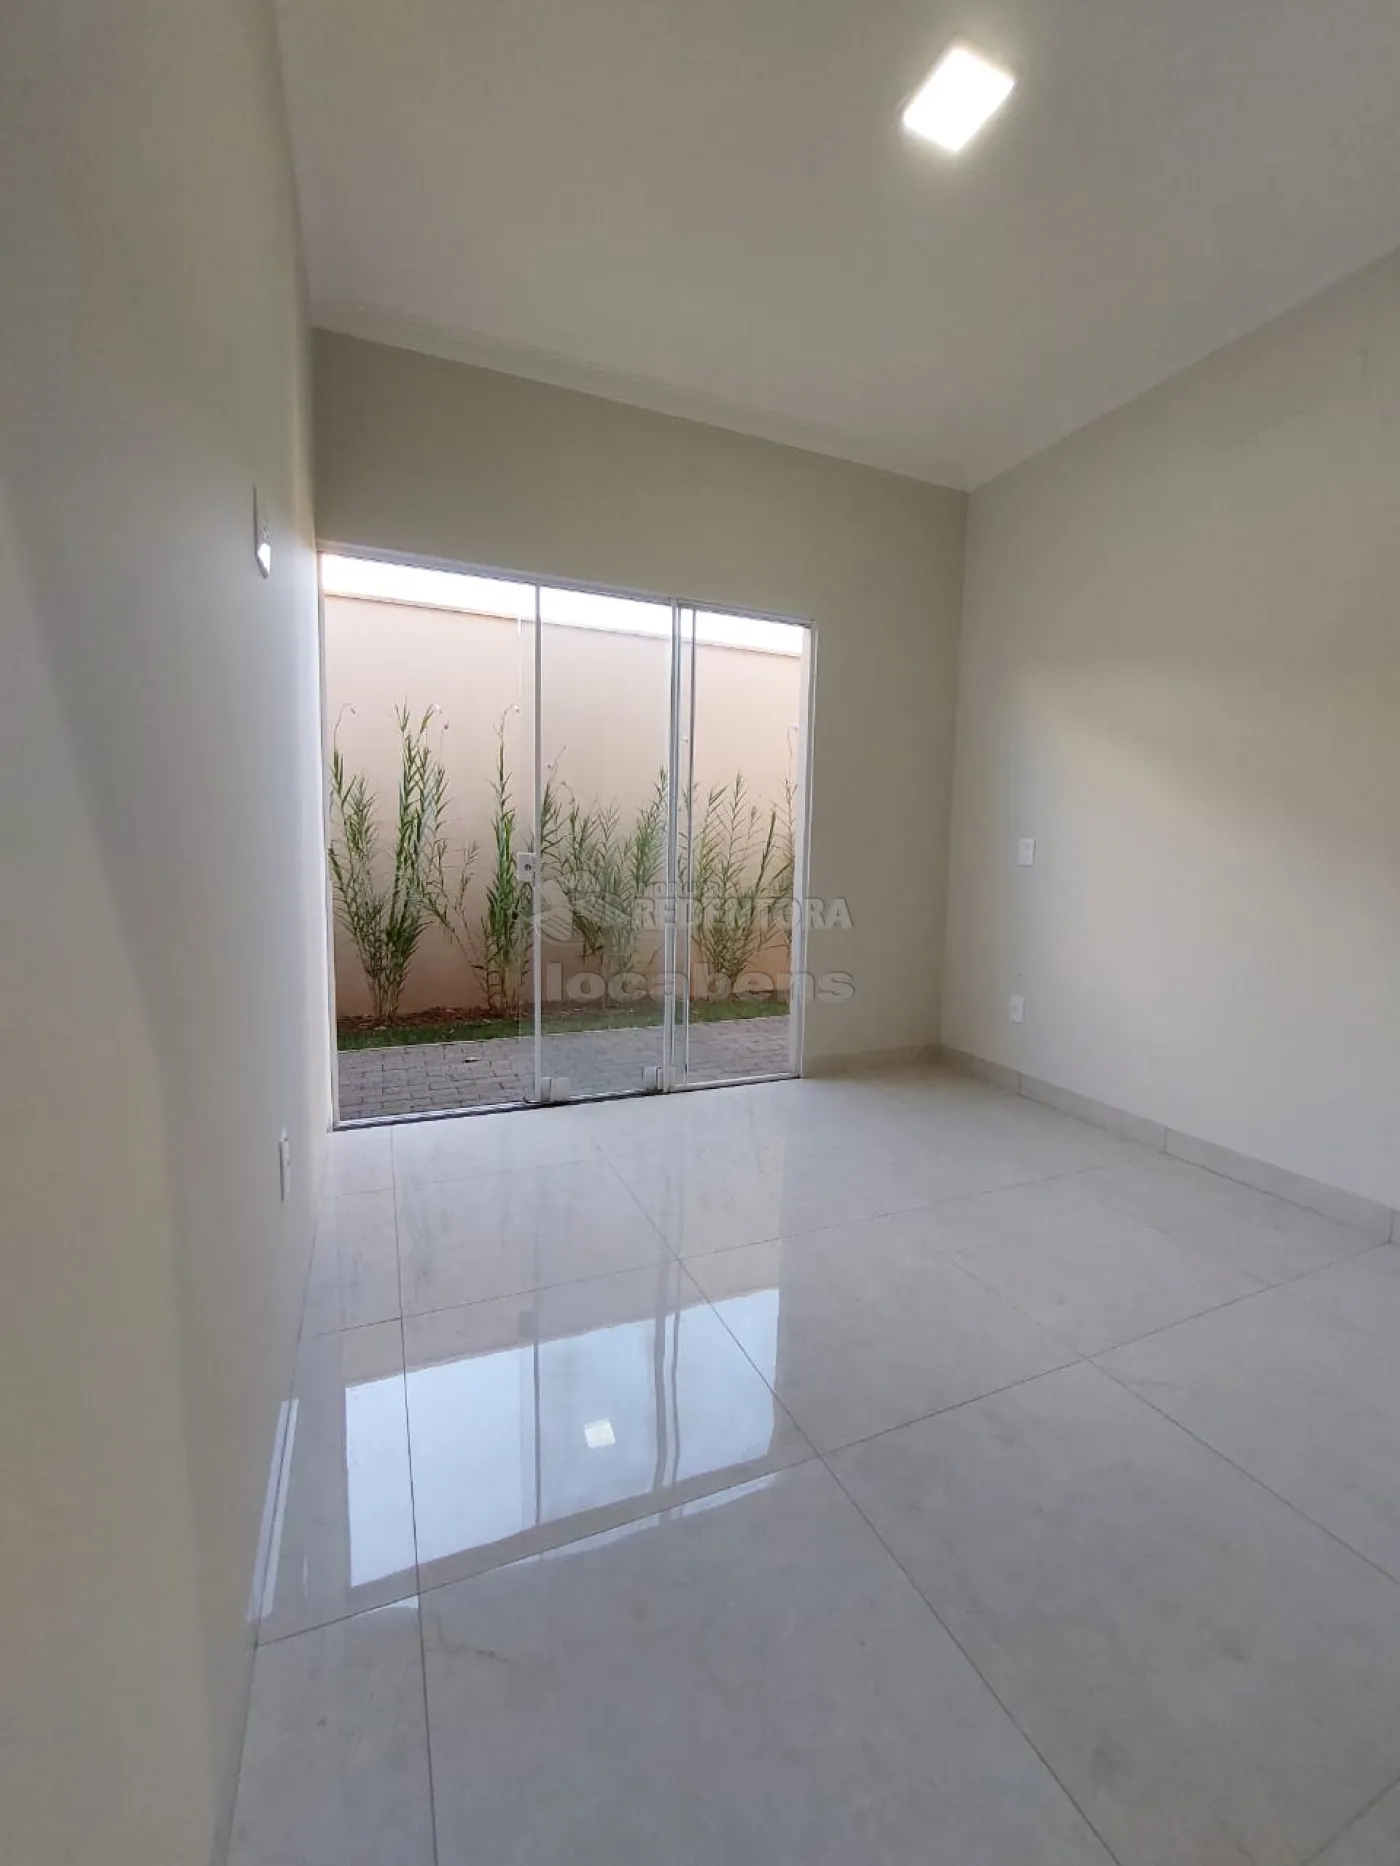 Comprar Casa / Condomínio em Mirassol apenas R$ 860.000,00 - Foto 3